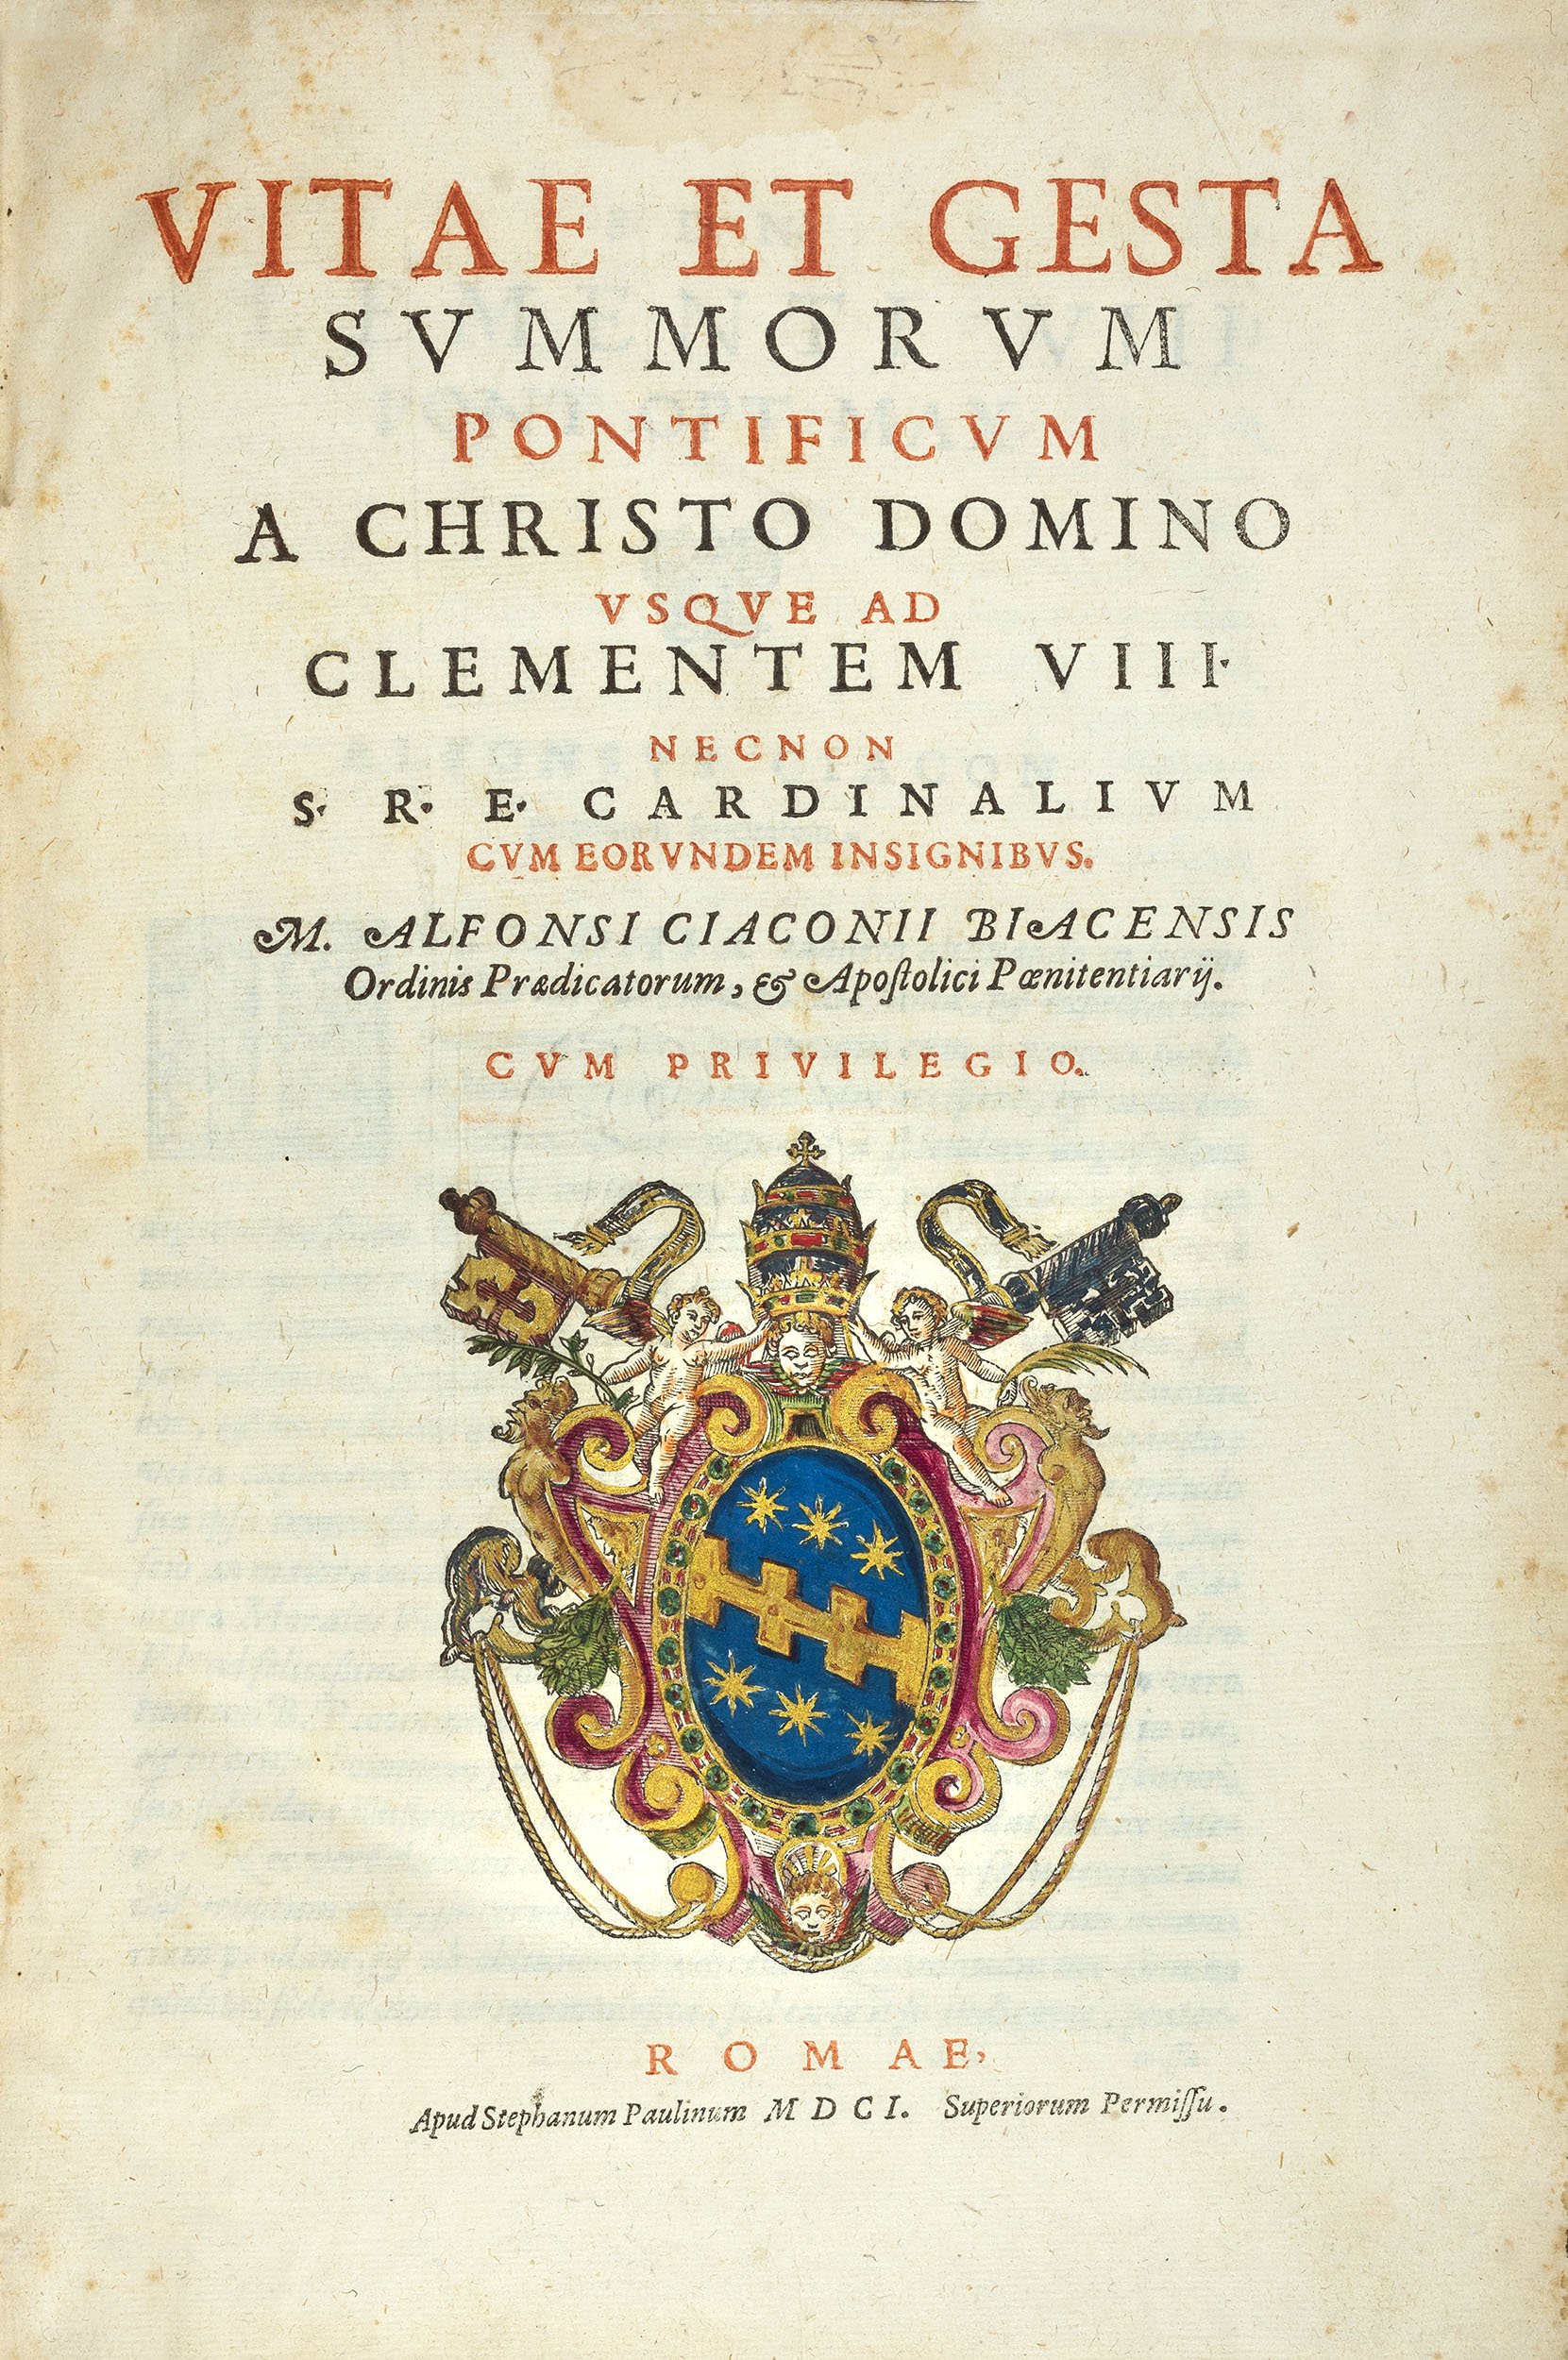 Ciaconius-Vitae-et-Gesta-1598-1601-pope-clement-viii-6.jpg